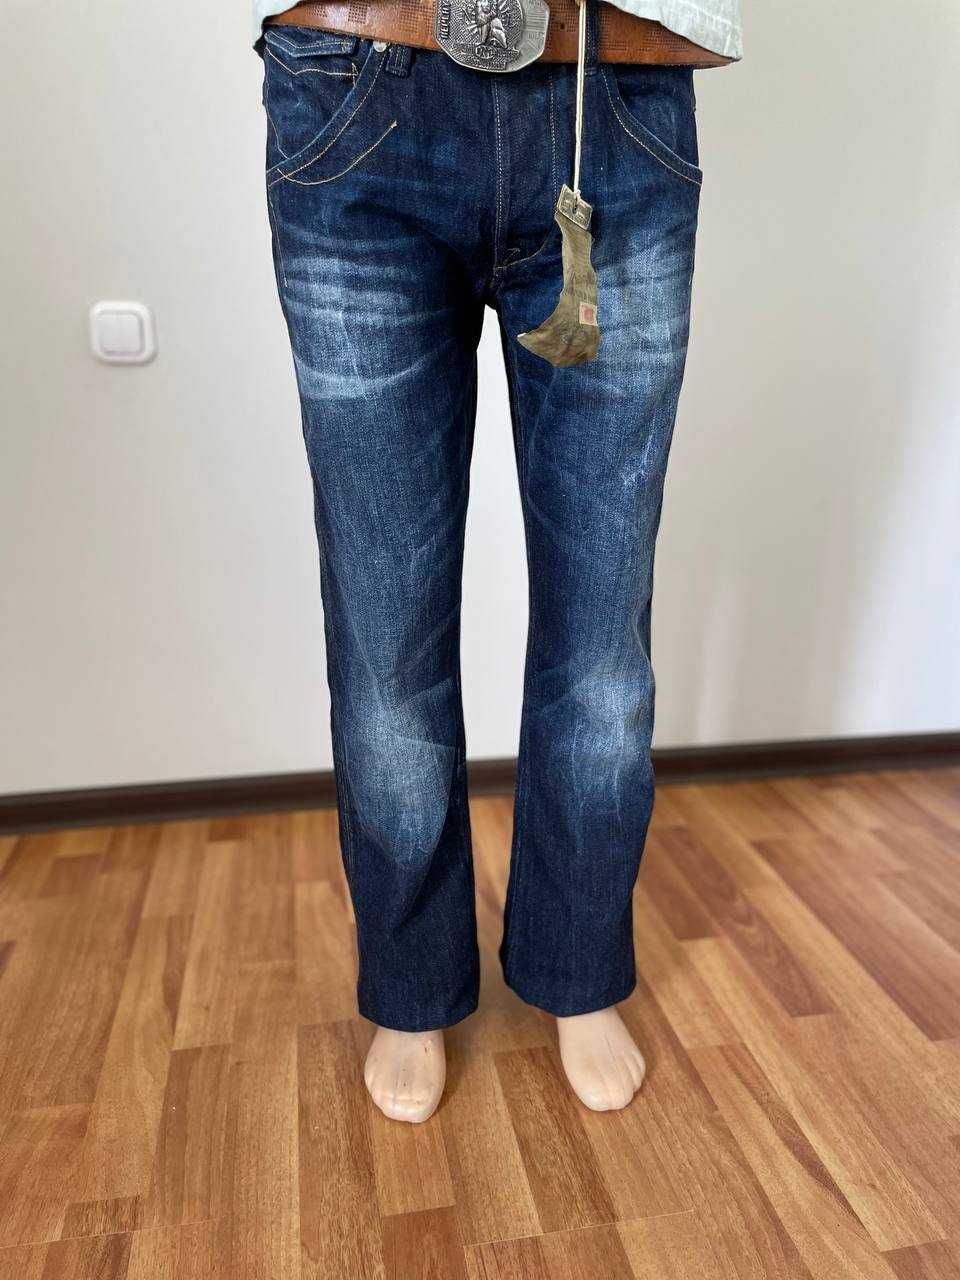 Mужские джинсы из США.